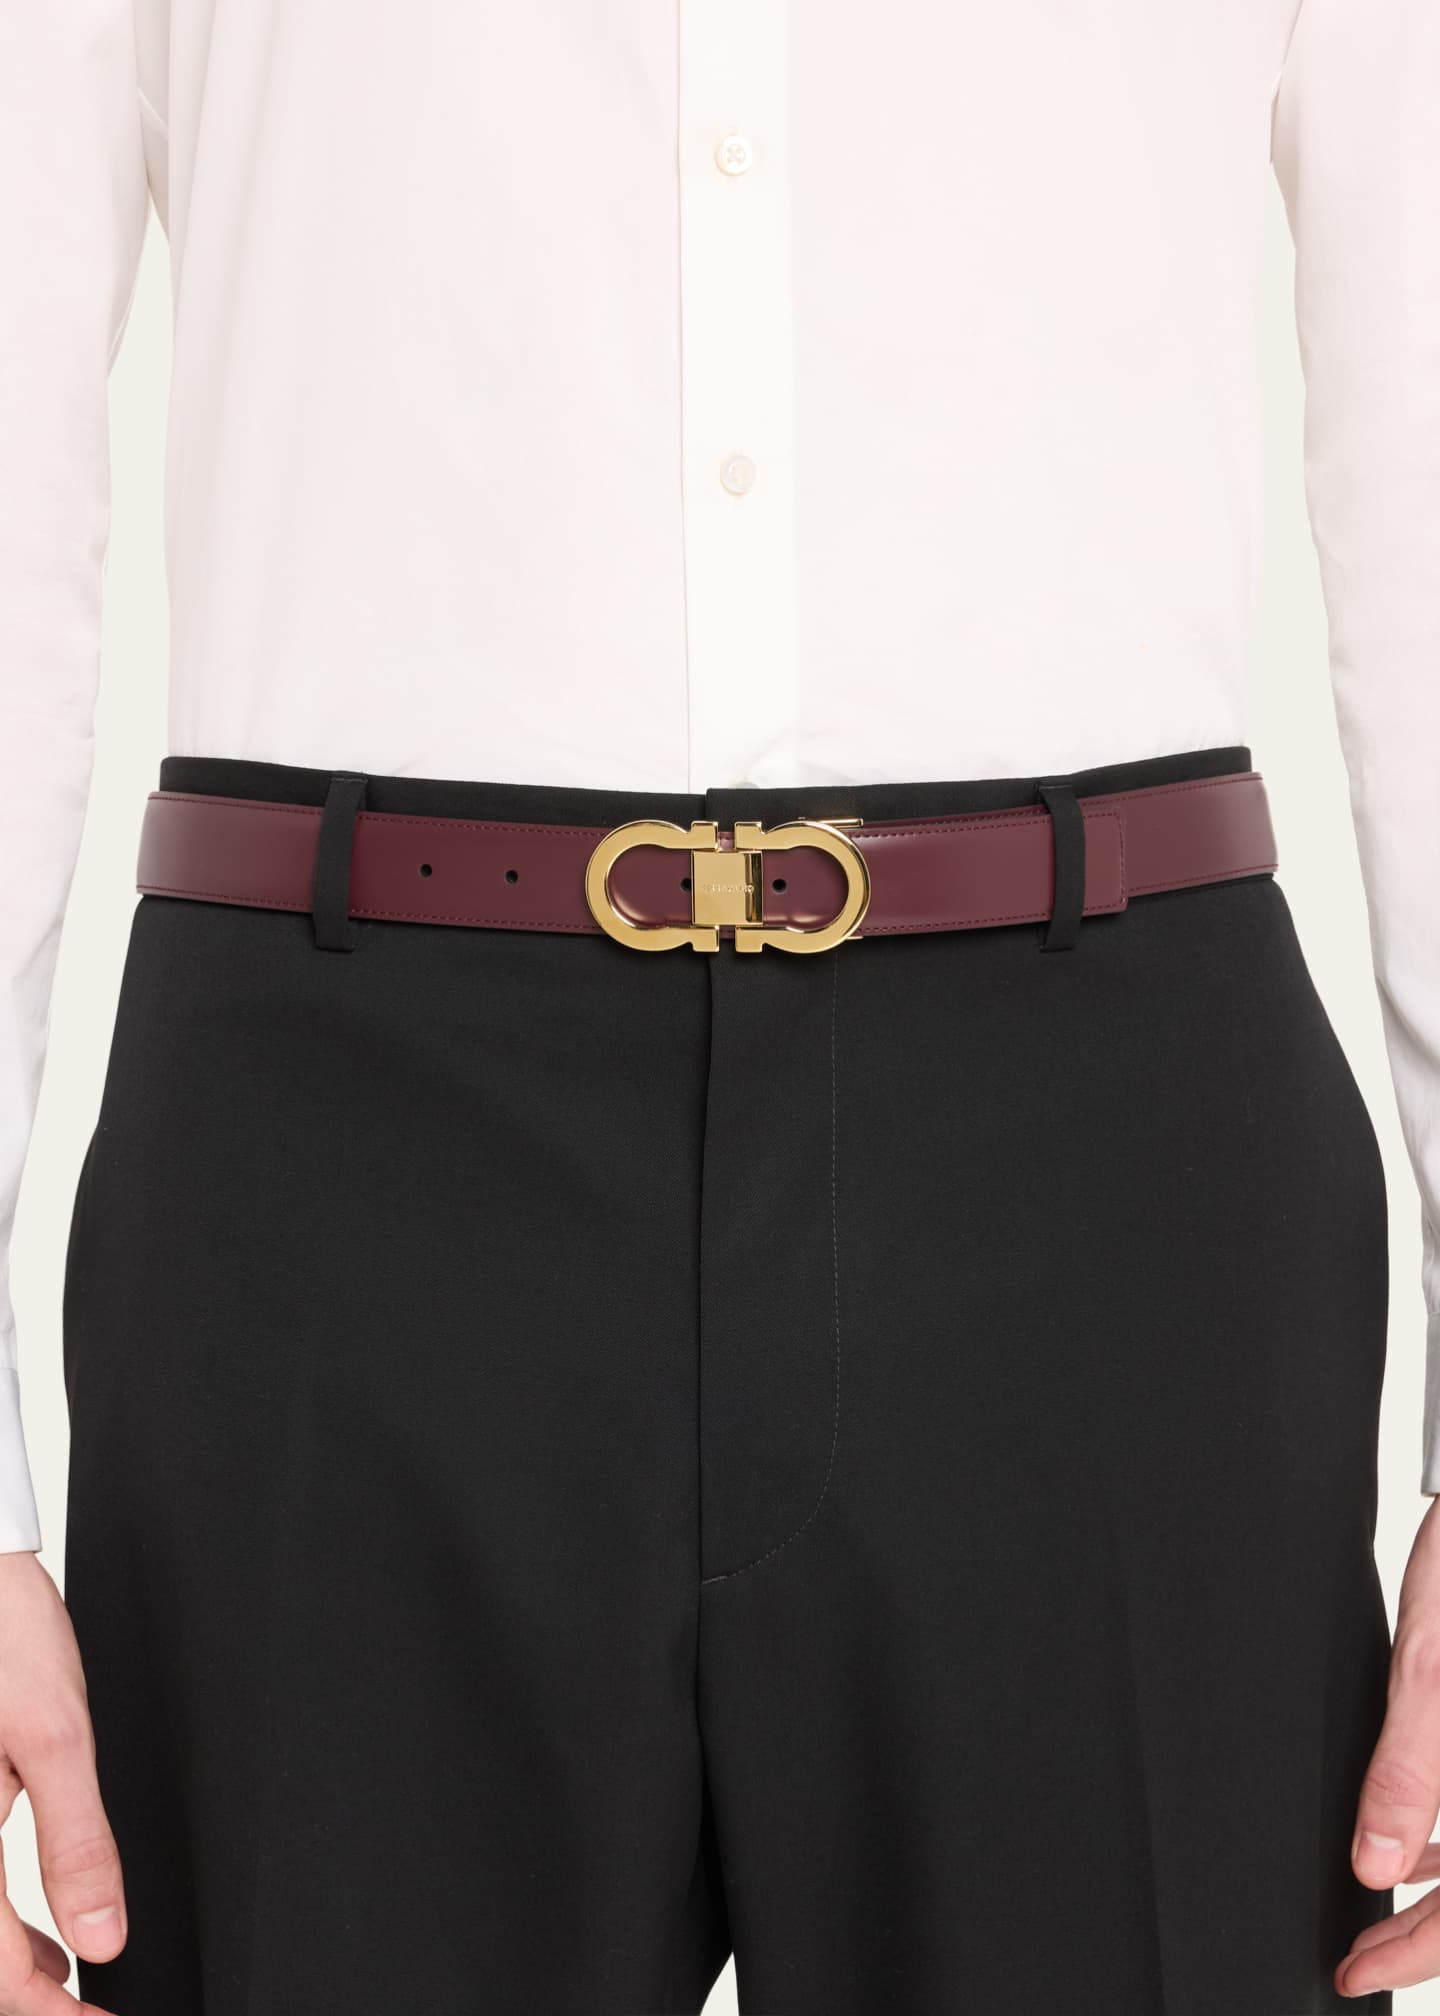 Ferragamo Men's Reversible Double-Gancini Leather Belt - Bergdorf Goodman